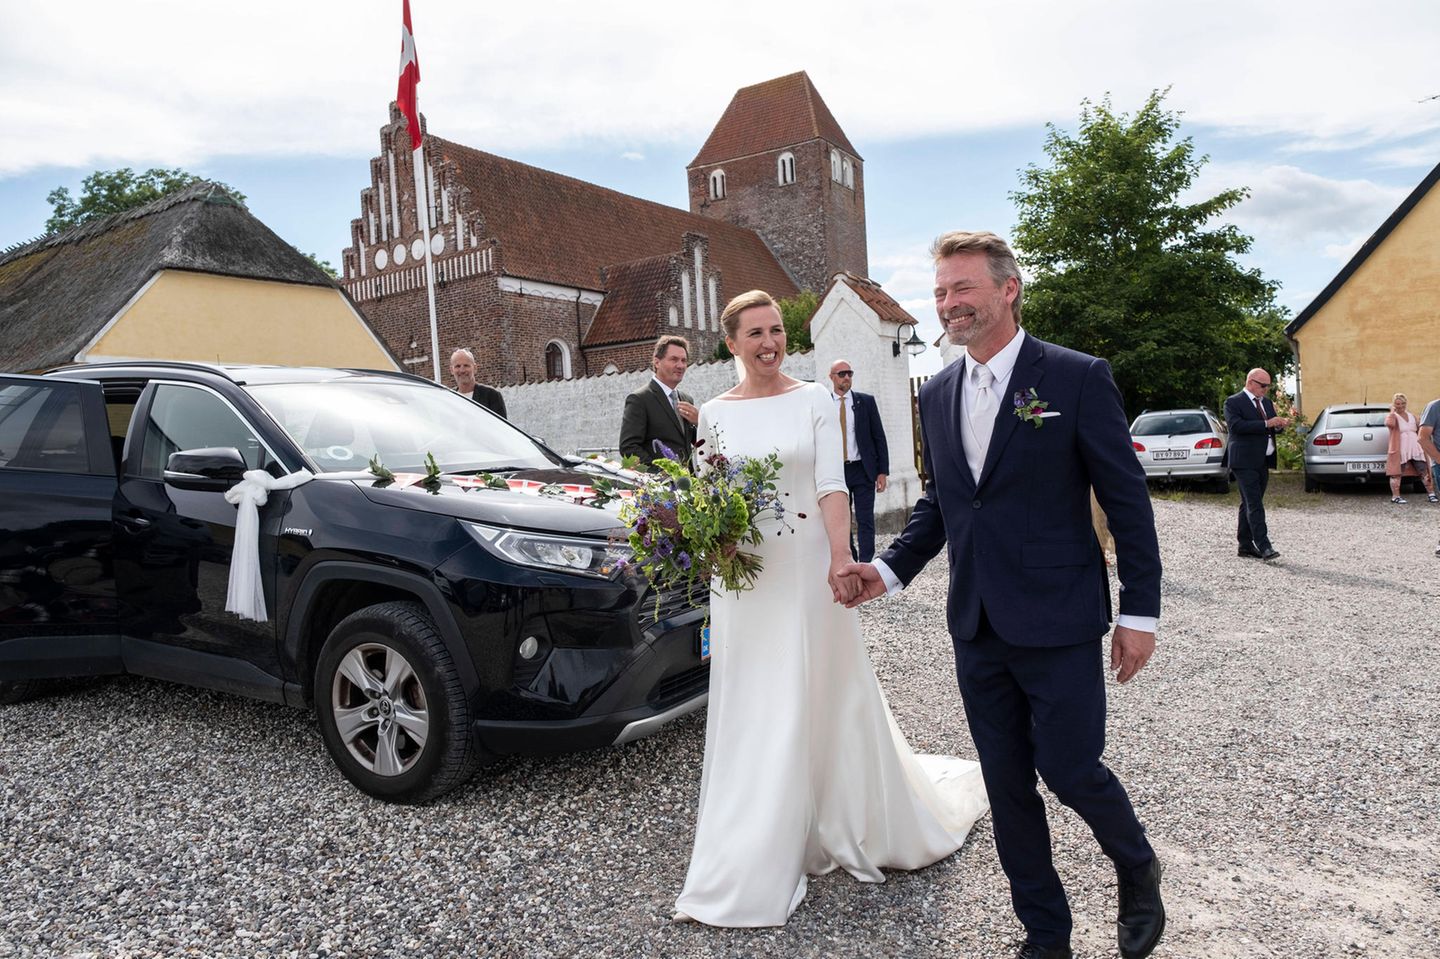 Endlich konnten sie "Ja" sagen: Dänemarks Premierministerin Mette Fredriksen hat ihren Freund Bo Tengberg geheiratet. Die Hochzeit musste wegen der Coronapandemie und wegen ihres vollen Kalenders mehrmals verschoben werden. Umso schöner, dass die Trauung jetzt stattfinden konnte - und die beiden strahlen... 